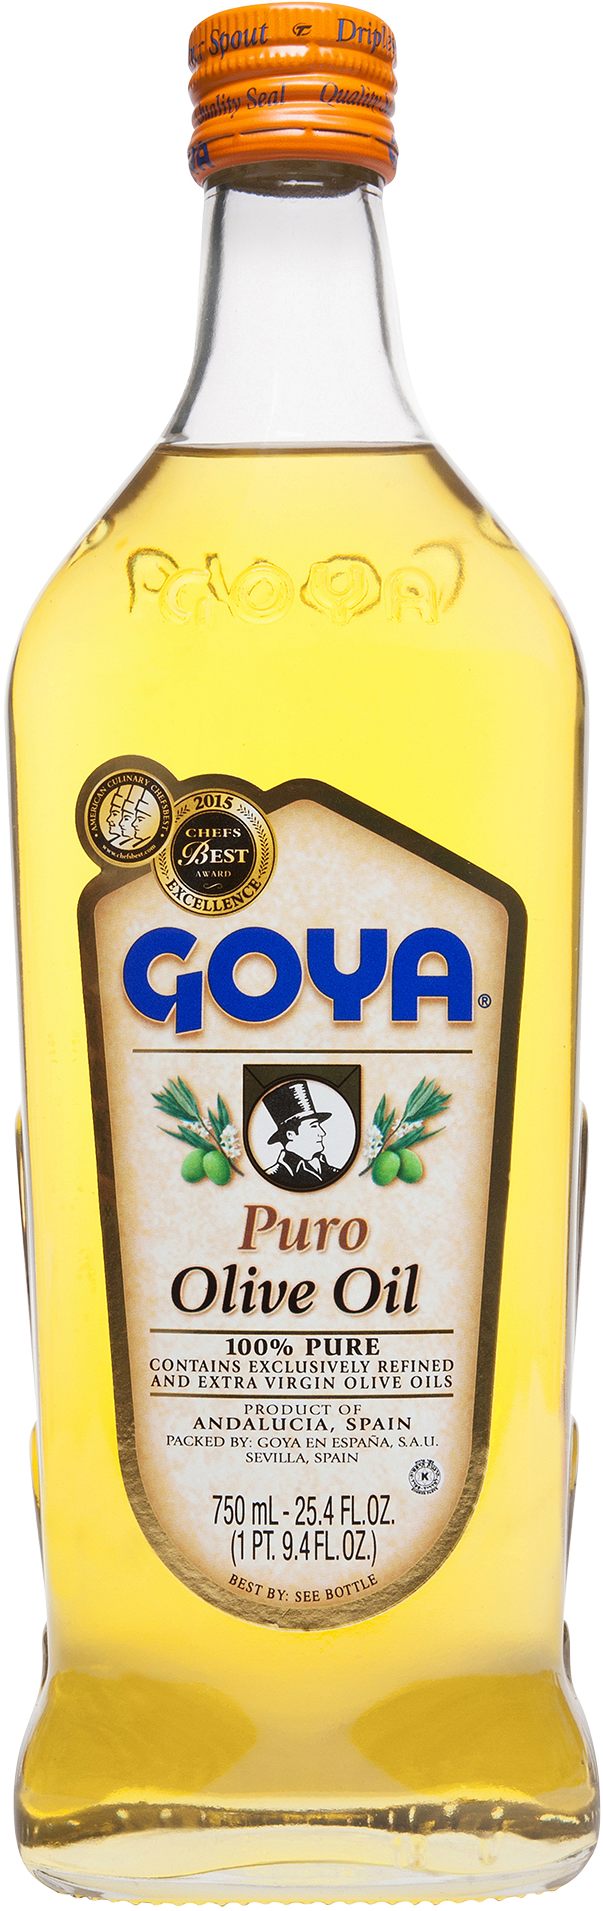 Puro Olive Oil